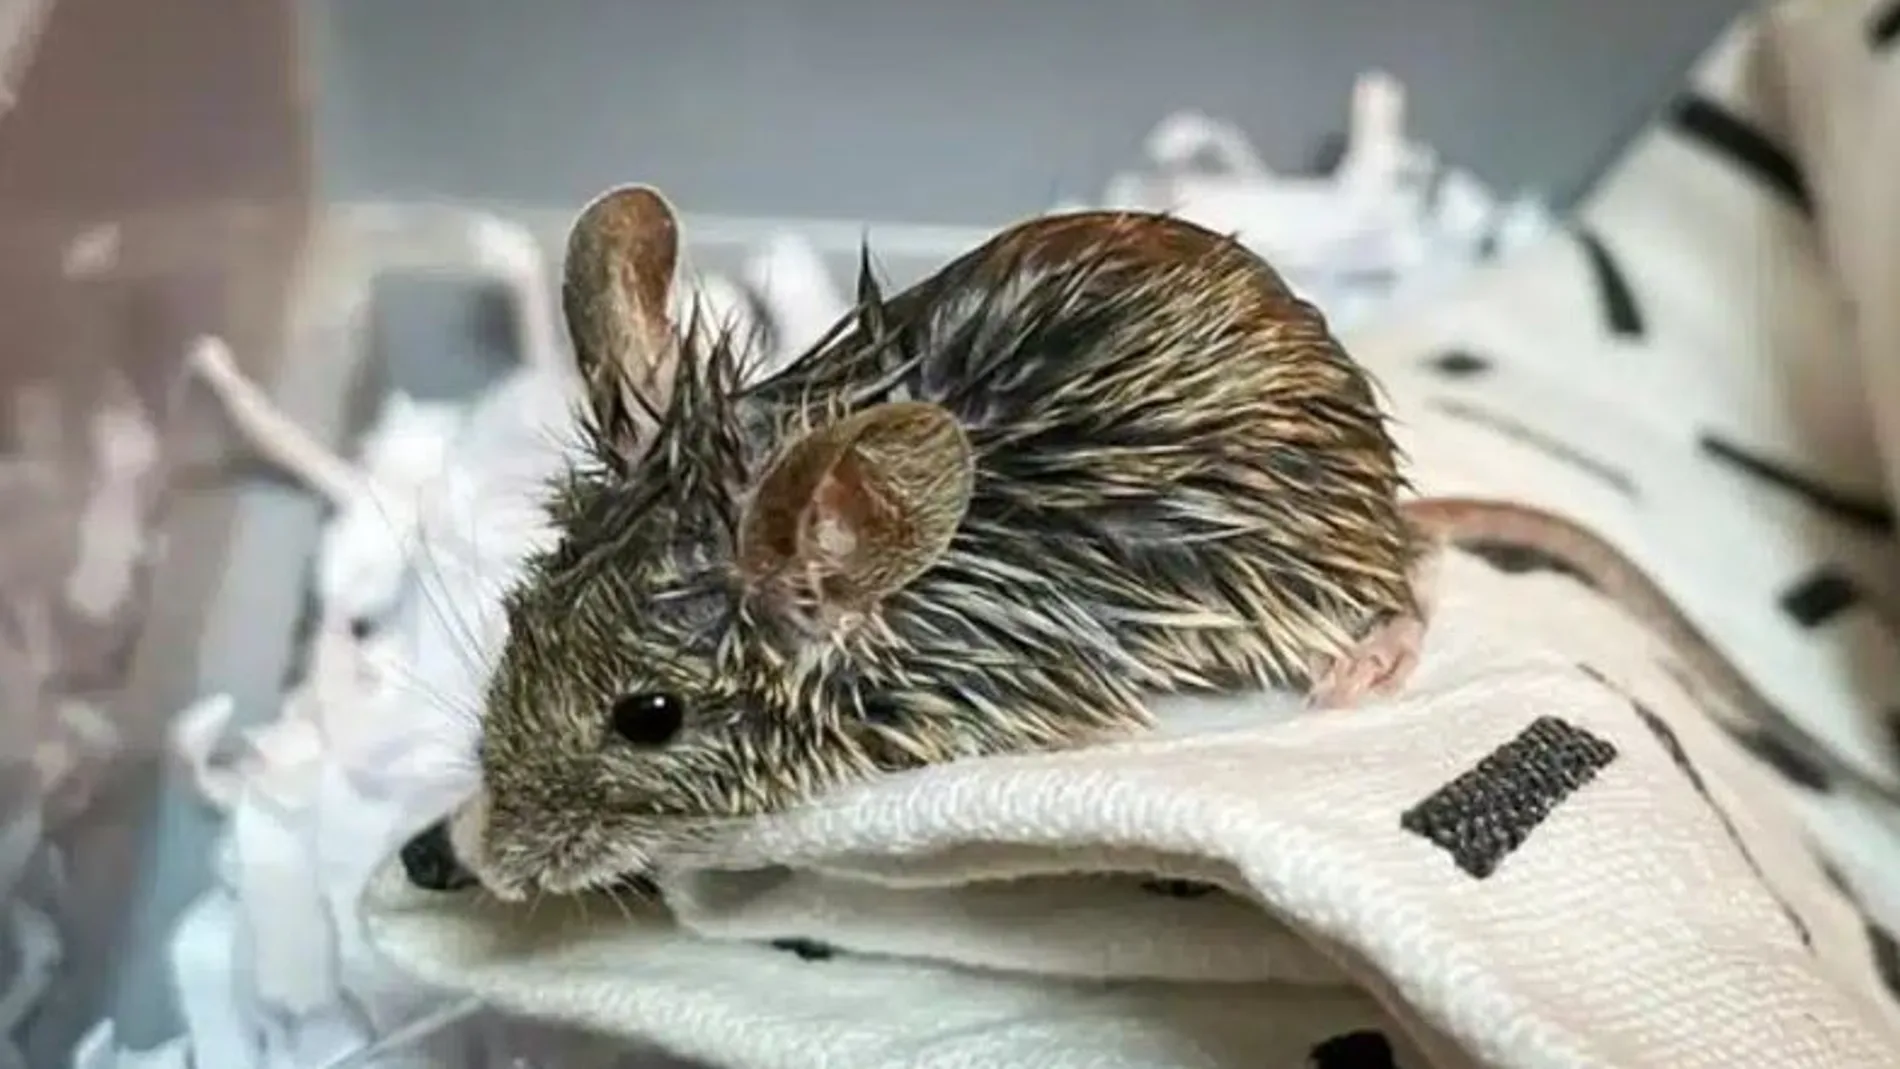 El ratón para cuya cura pedían dinero.